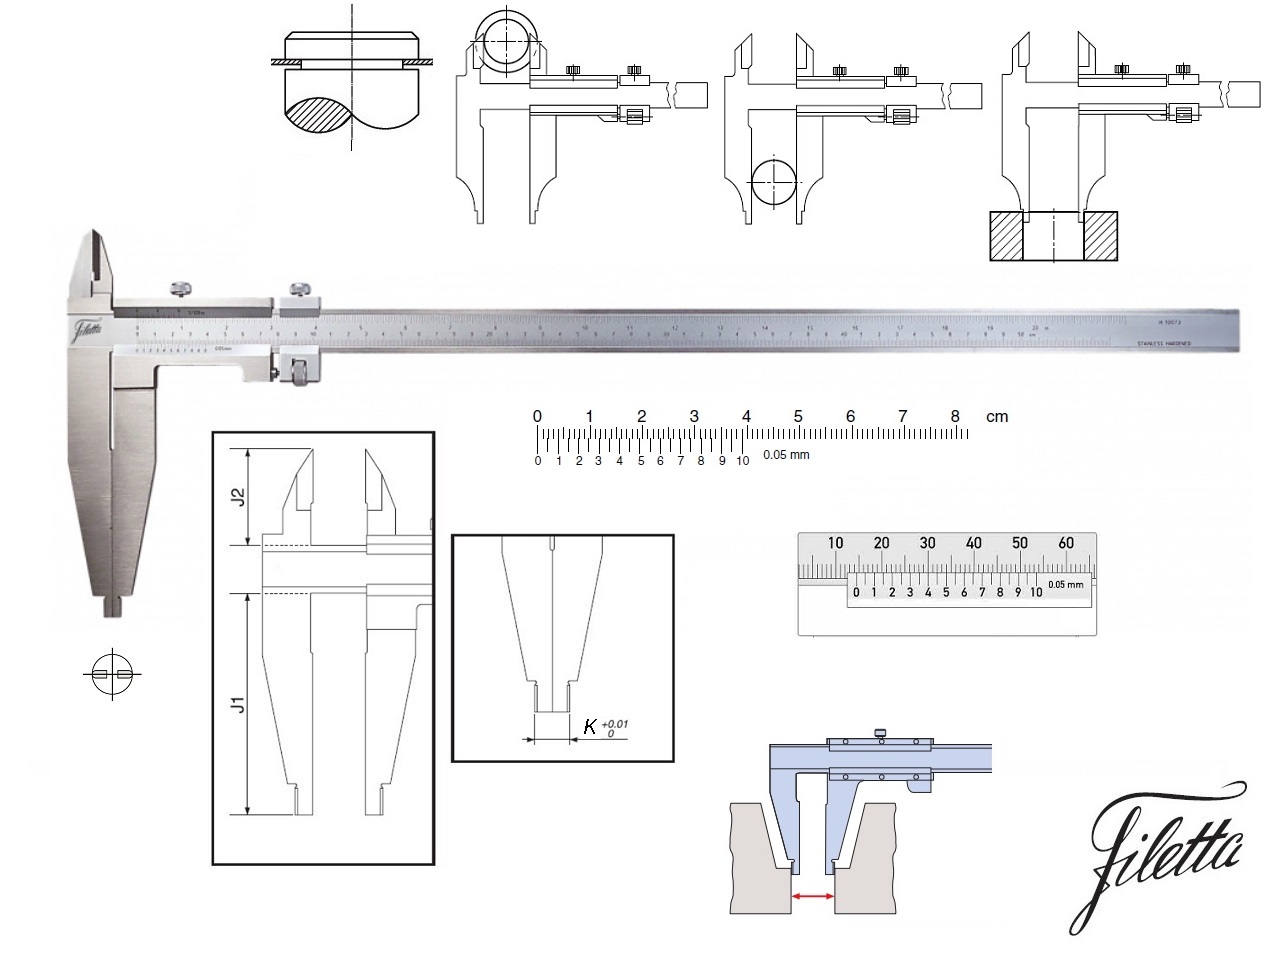 Posuvné měřítko Filetta 0-1500 mm, čelisti 200 mm, s měřicími nožíky pro vnější měření